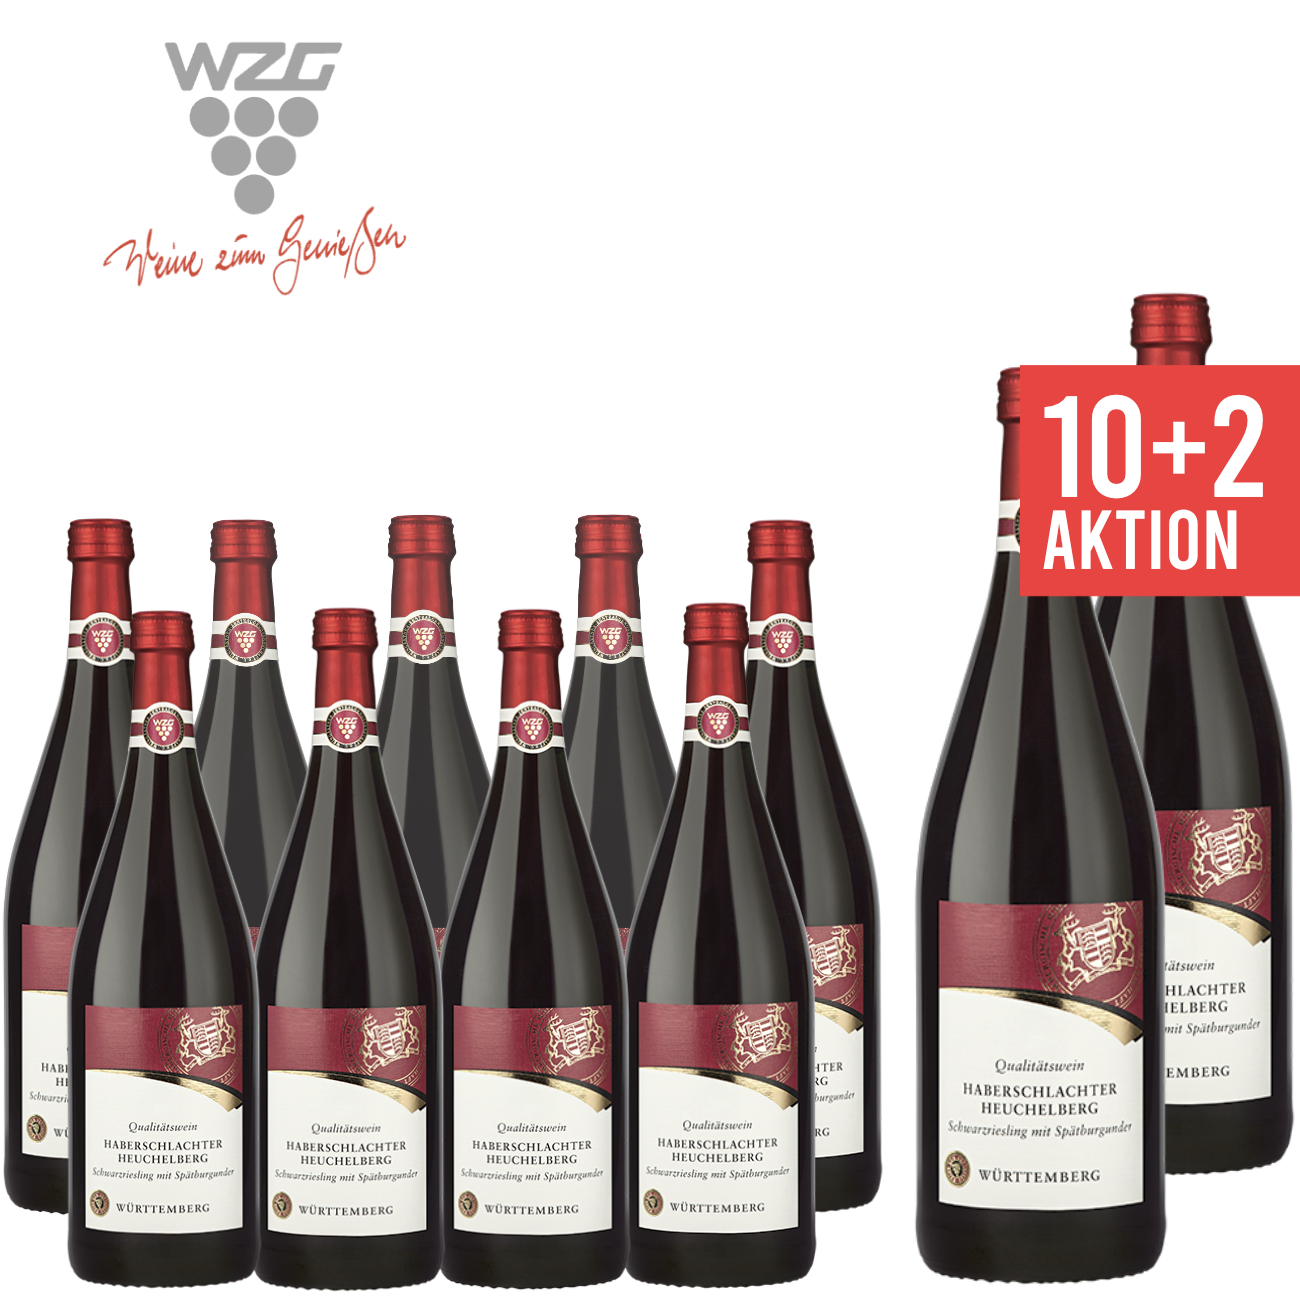 WZG Möglingen10+2 Haberschlachter Heuchelberg Schwarzriesling mit Spätburgunder 1,0 L - Qualitätswein, Rotwein, Literflasche, 1-Liter, Württemberger